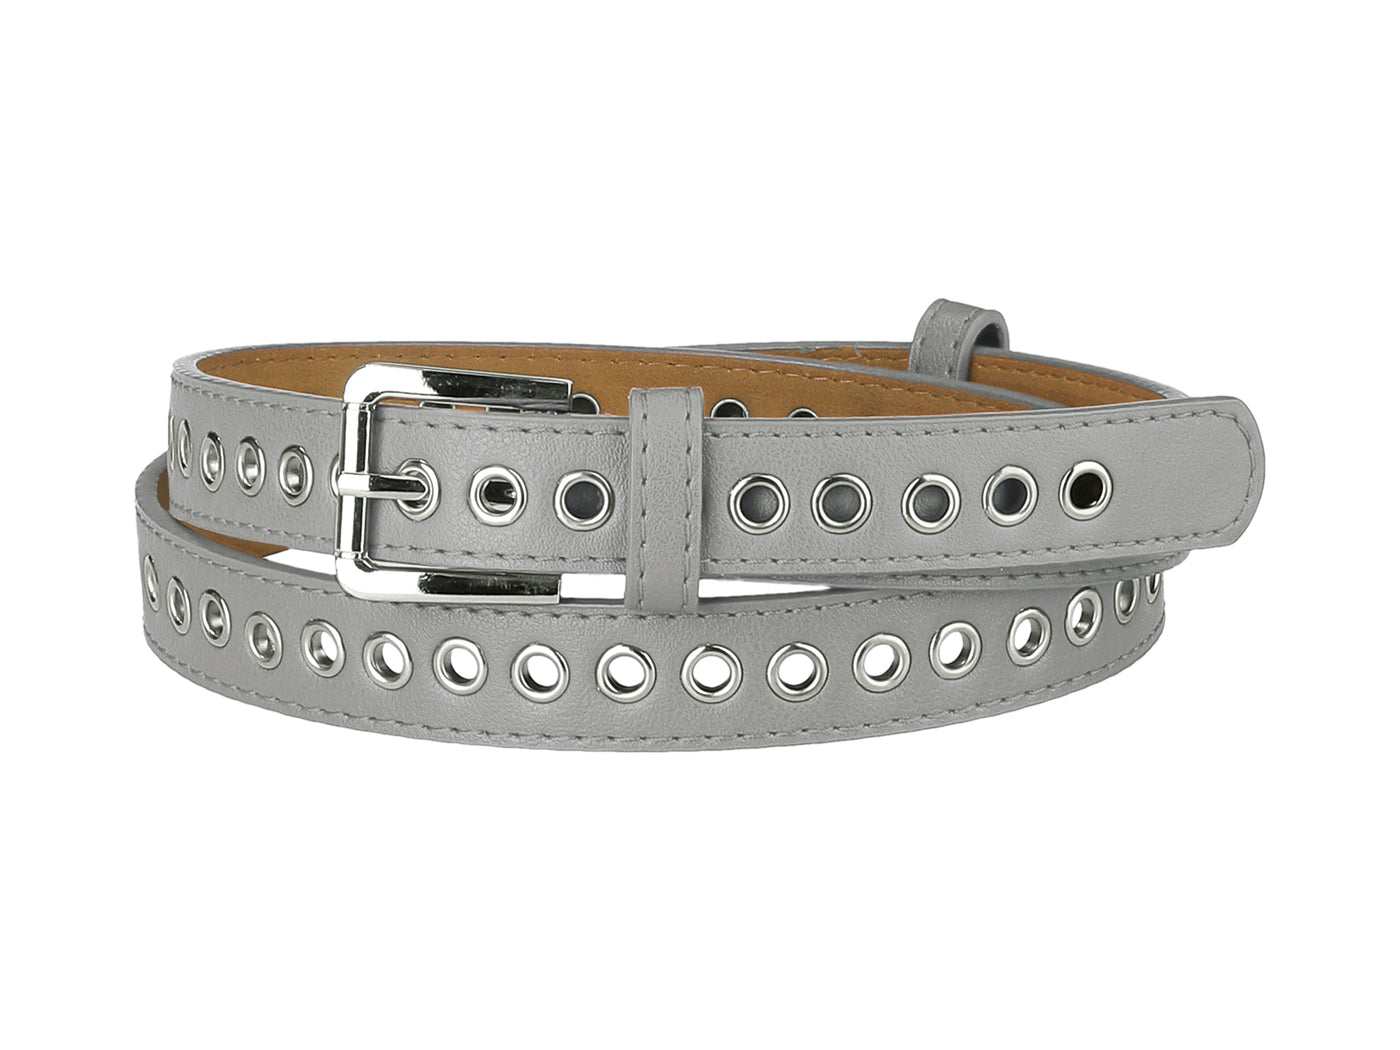 Allegra K Women Grommet Belt PU Leather Metal Buckle Skinny Waist Hollow Belts